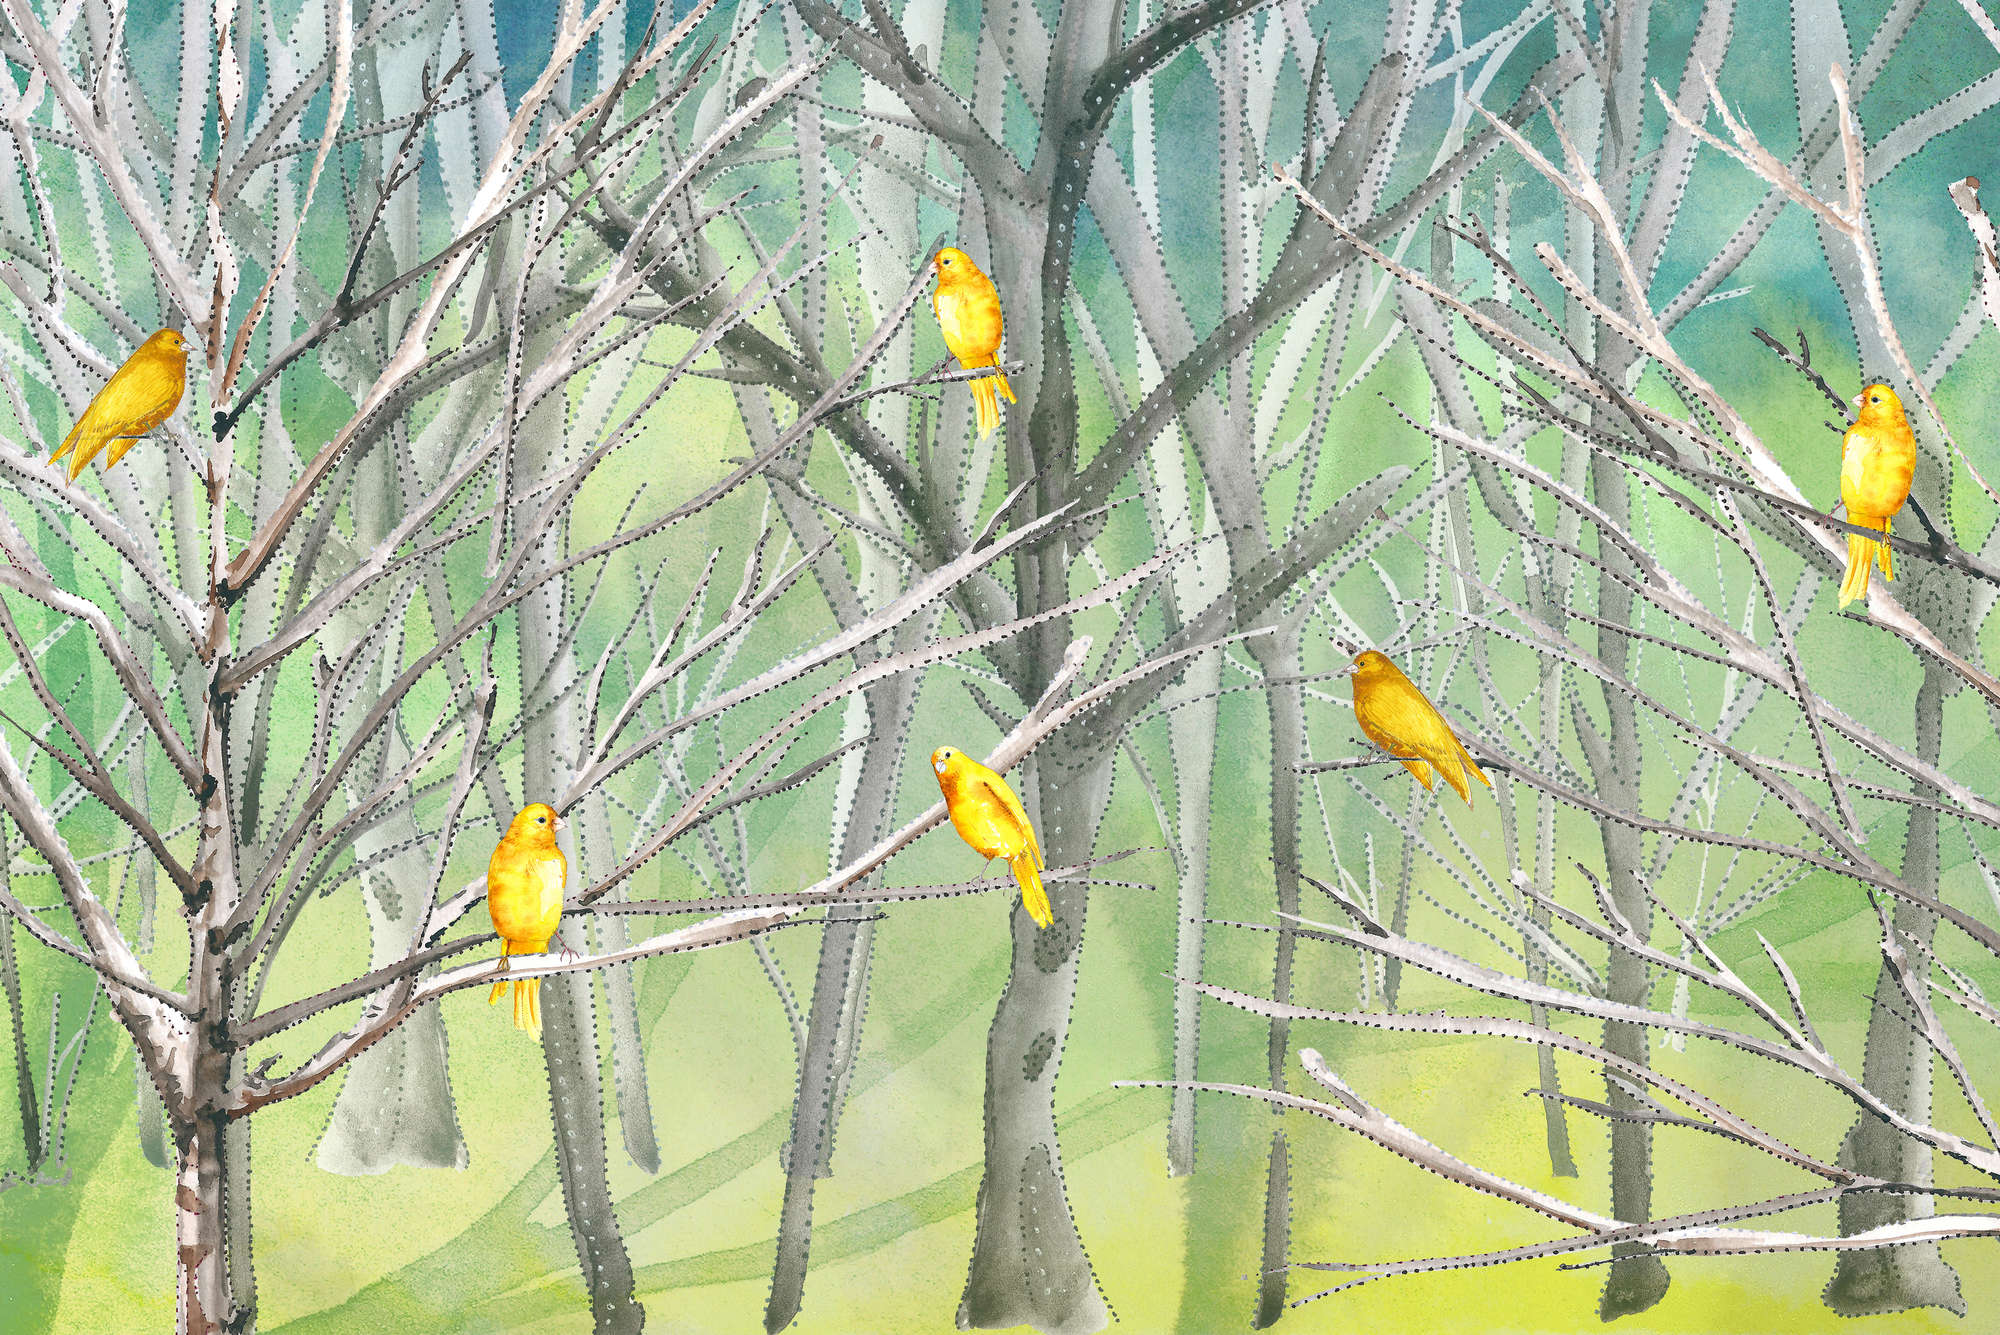             Papel pintado de bosque con pájaros en azul y amarillo sobre vellón liso de primera calidad
        